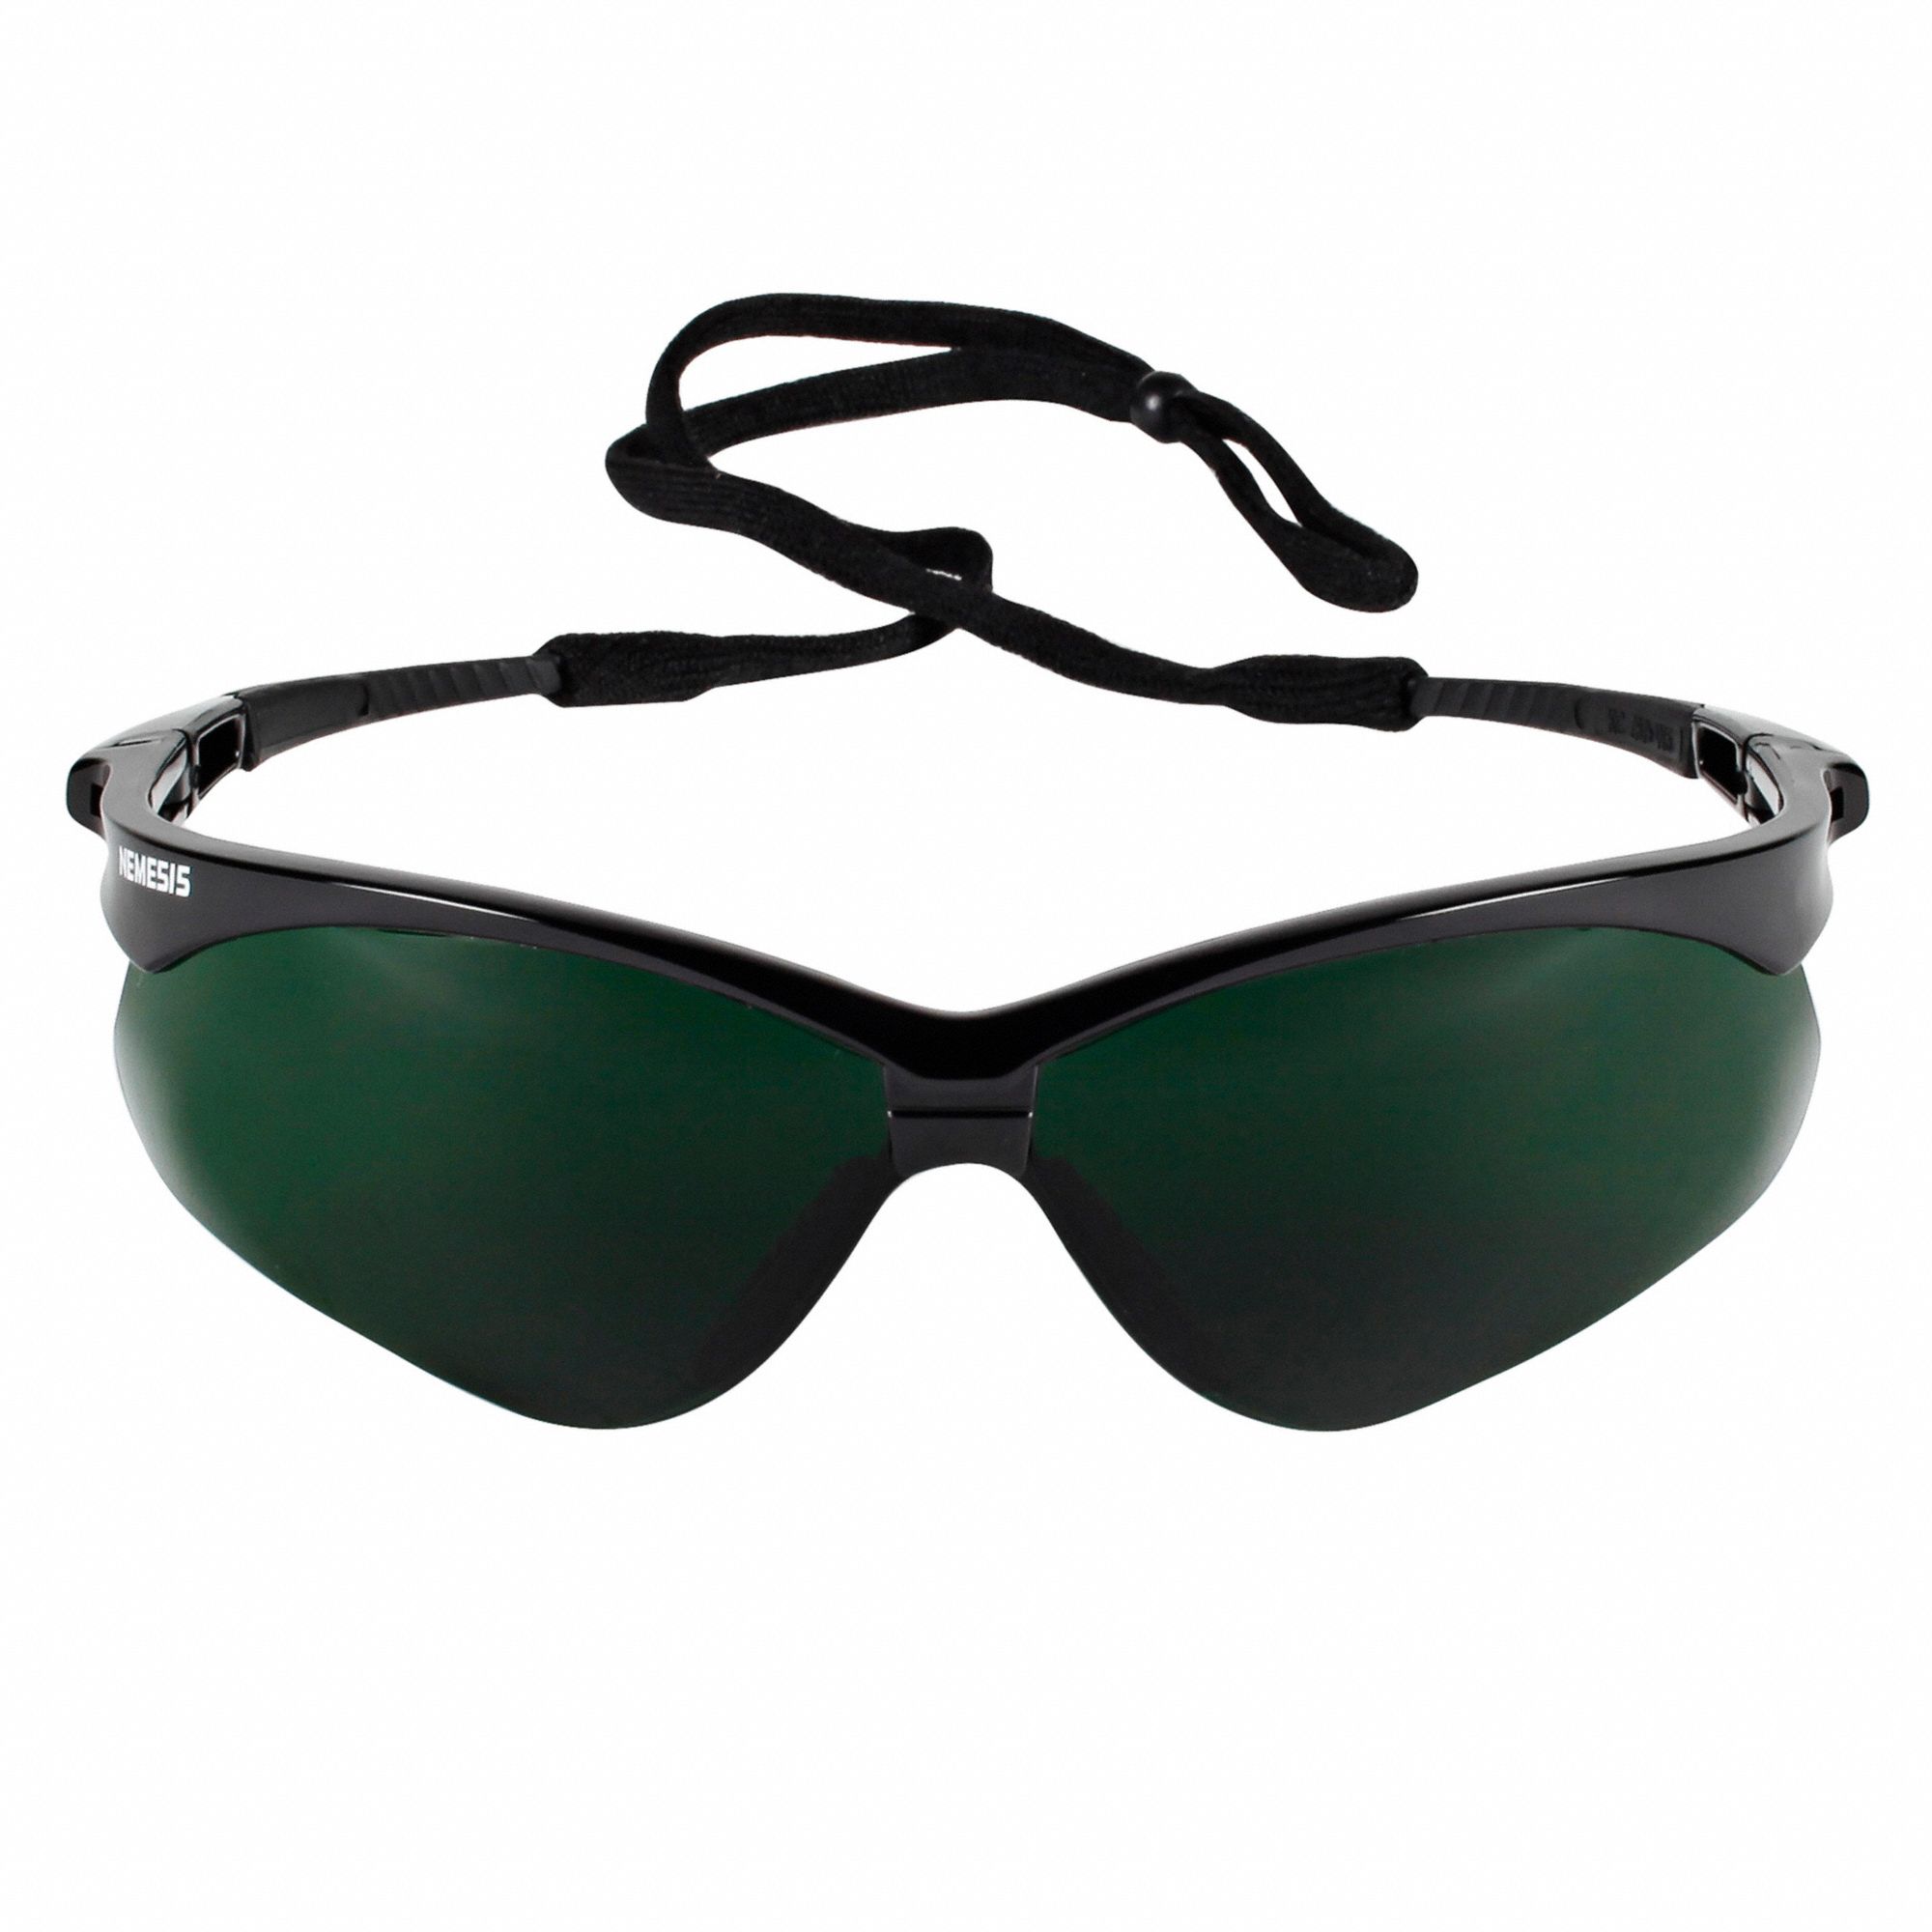 Kleenguard V30 Nemesis Scratch Resistant Safety Glasses Shade 5 0 Lens Color 3uxr7 25671